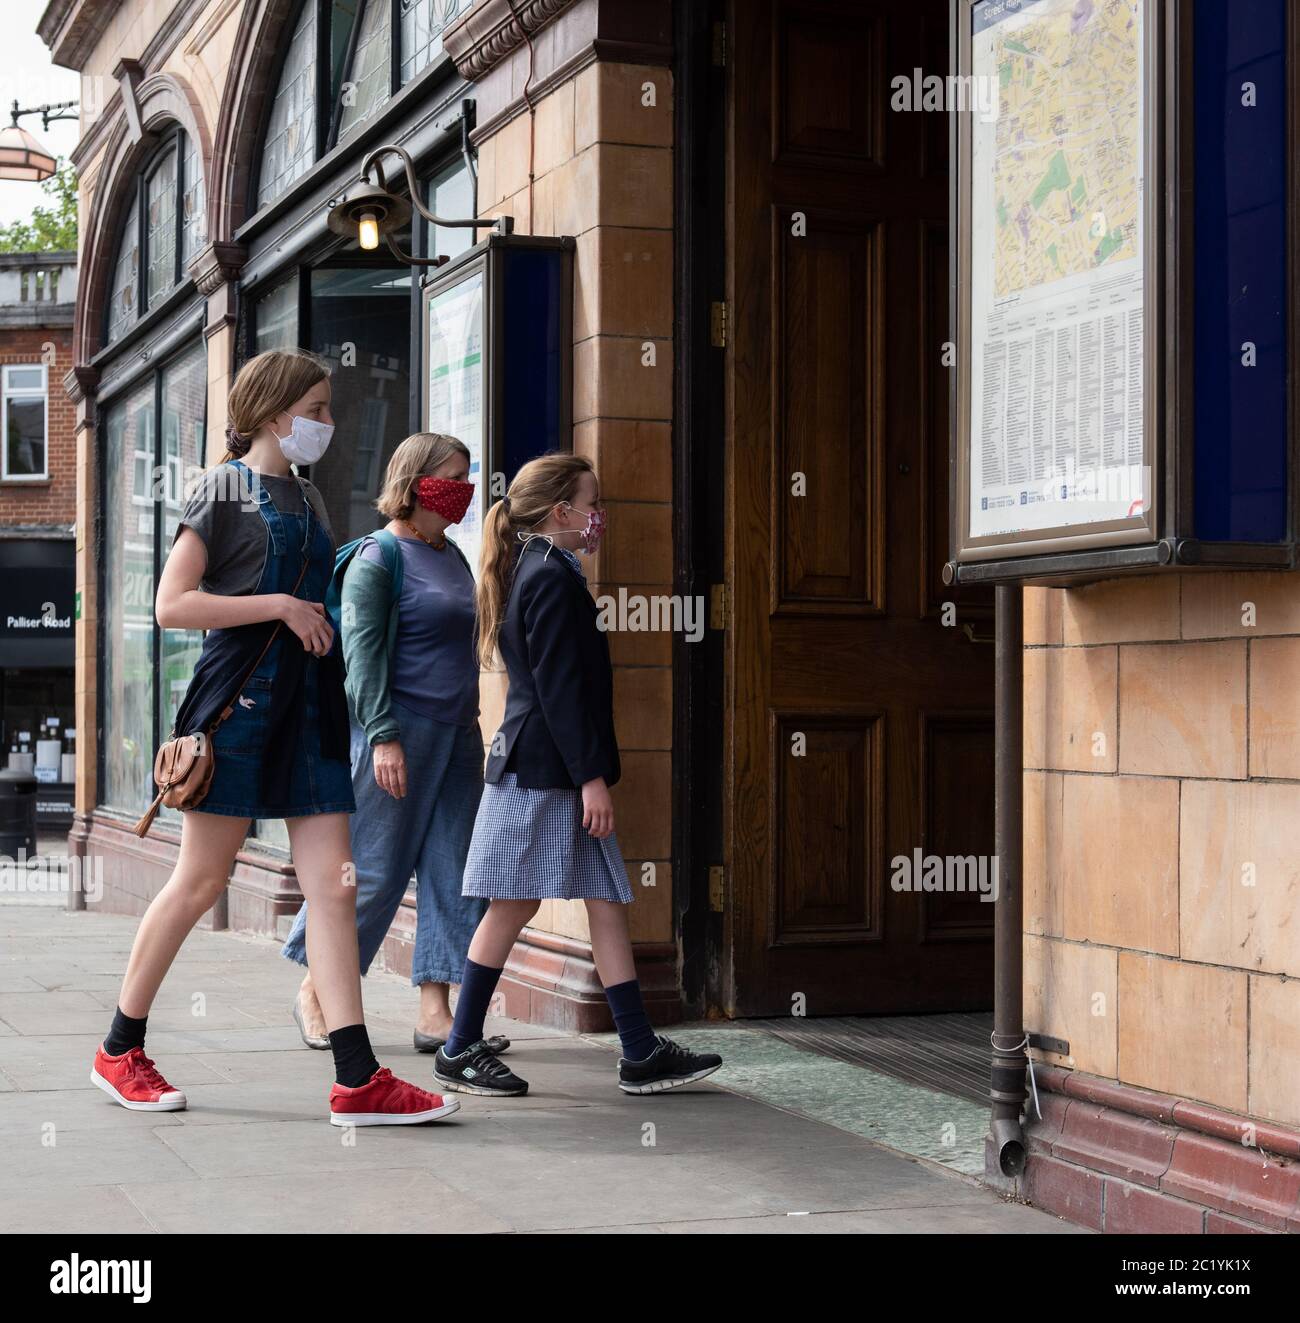 Les enfants portant un masque sur les transports en commun. Barons court. Londres, Royaume-Uni. 7 juin 2020. FORMULAIRES DE CONSENTEMENT SIGNÉS POUR TOUTES LES PERSONNES EN PHOTO Banque D'Images